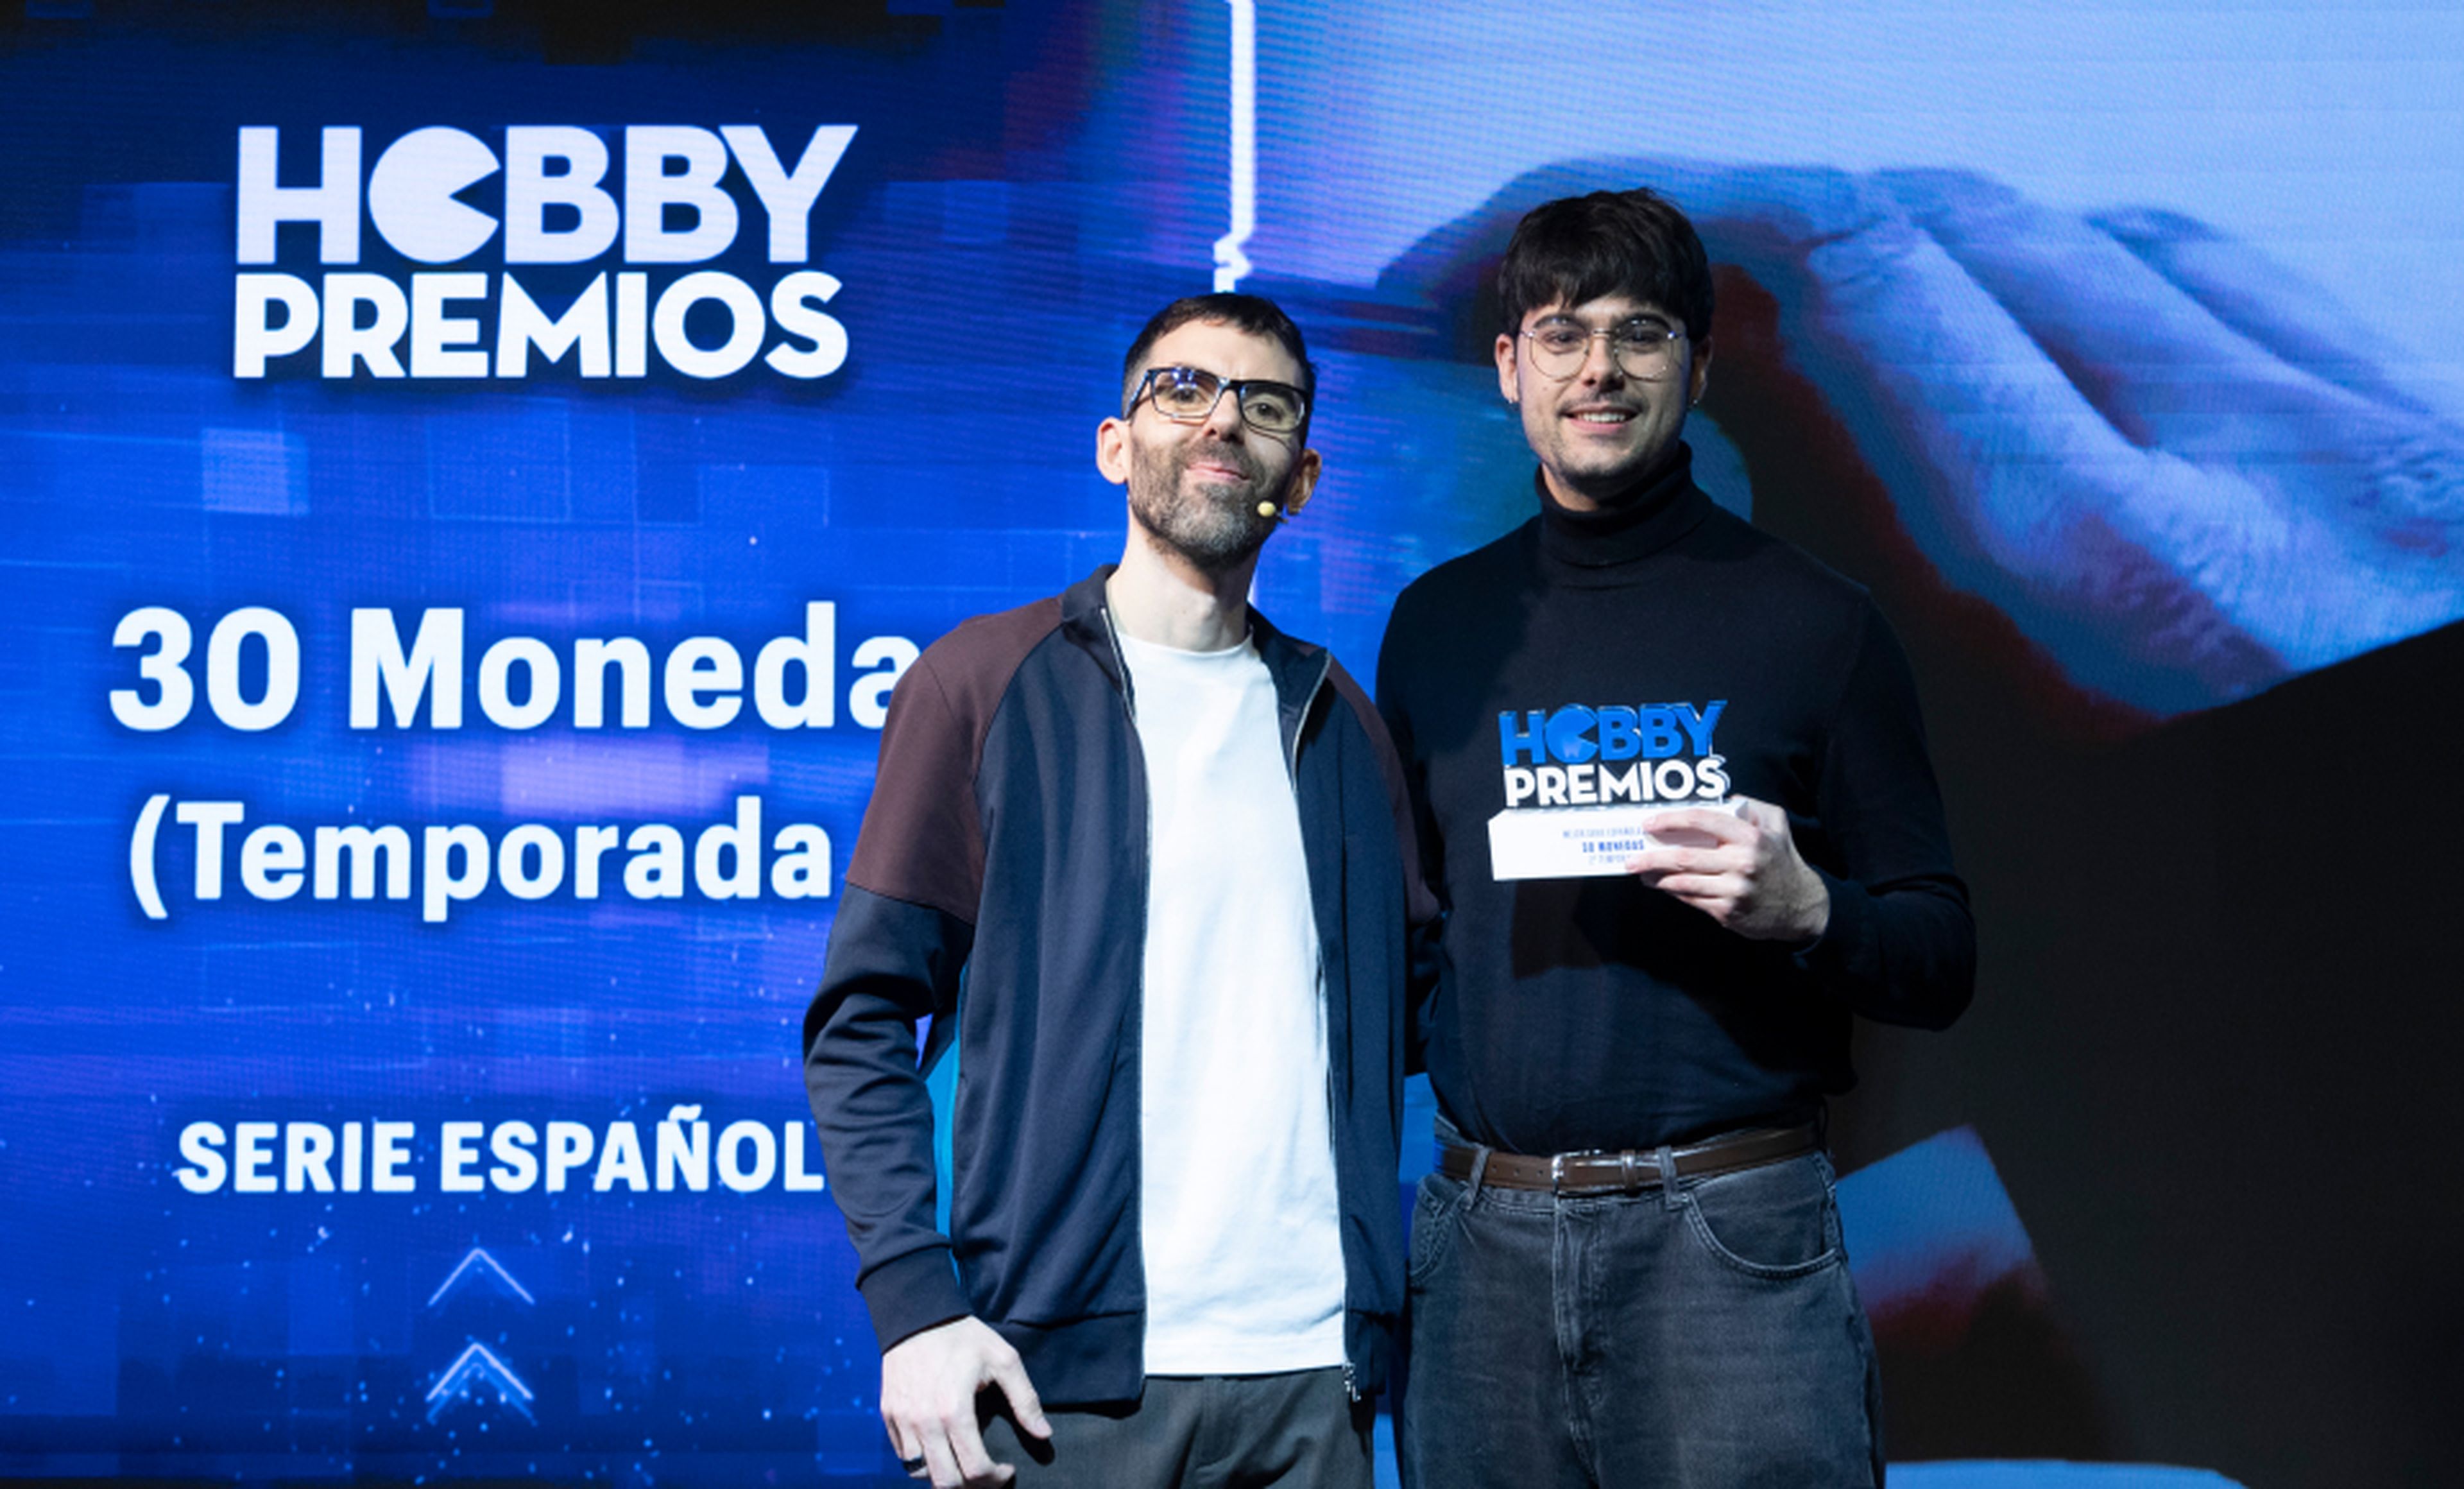 De izquierda a derecha: Ekaitz Ortega, coordinador de HobbyCine, entrega a Aarón García de HBO el premio a mejor serie española para 30 monedas (Temporada 2).